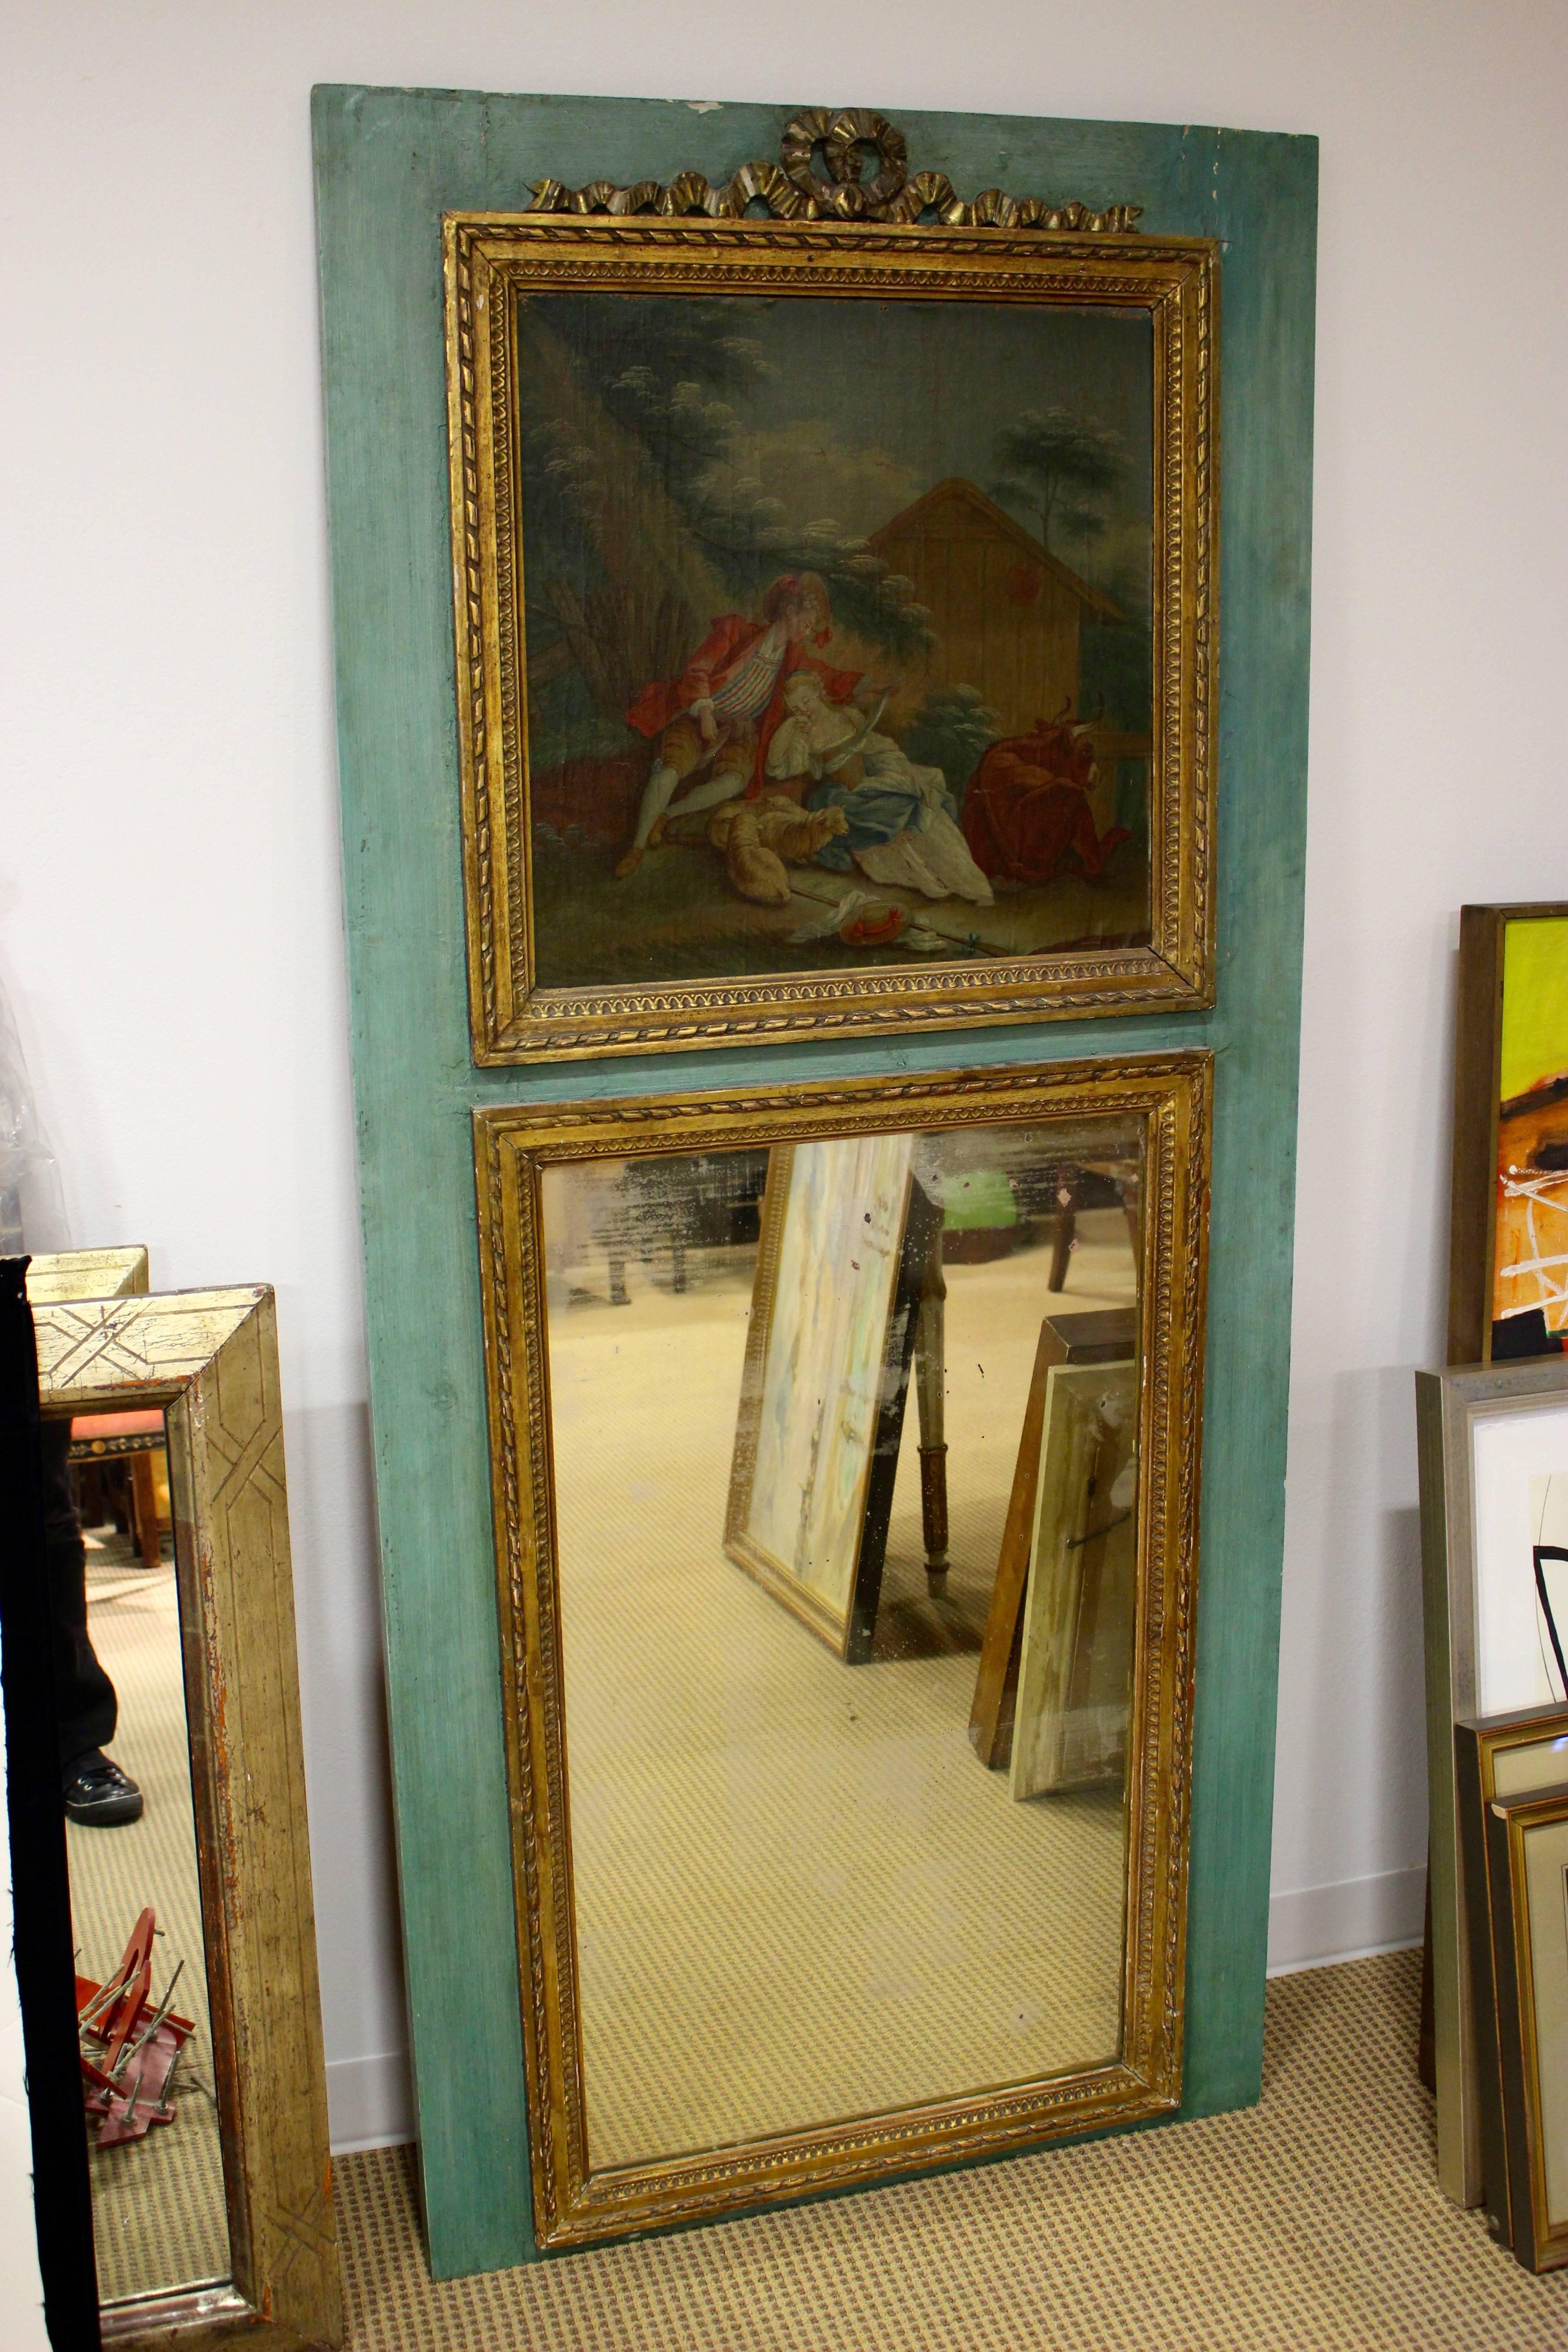 Miroir à trumeau peint de style Louis XVI français du 19ème siècle avec scène peinte d'amoureux et accents dorés. Cet exquis miroir trumeau de style Louis XVI présente un fond bleu/vert, permettant à la scène peinte exquise et aux accents dorés de